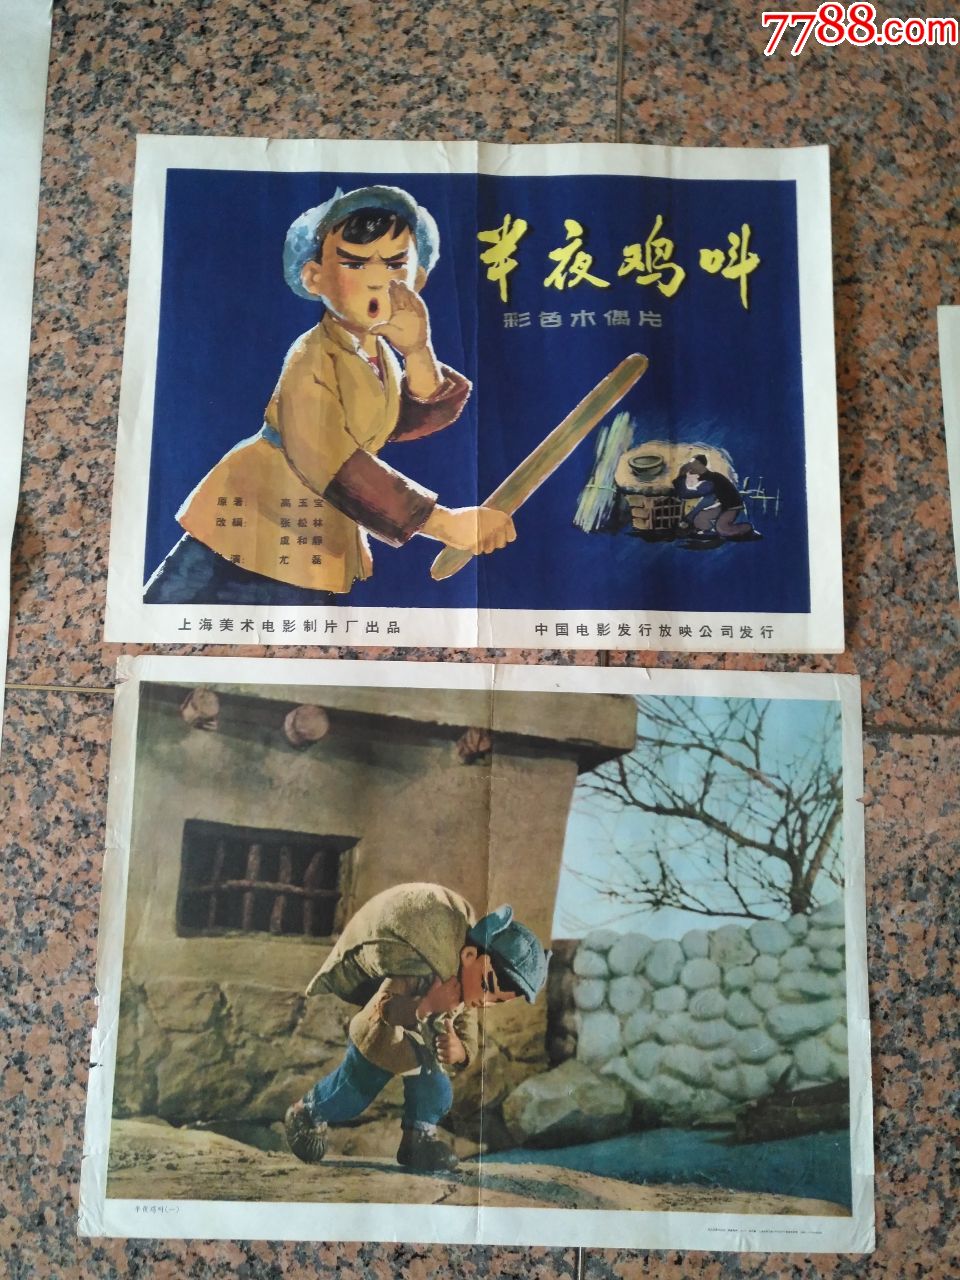 1964年电影宣传画,半夜鸡叫一对 半夜鸡叫组画1,上海美术电影制片厂